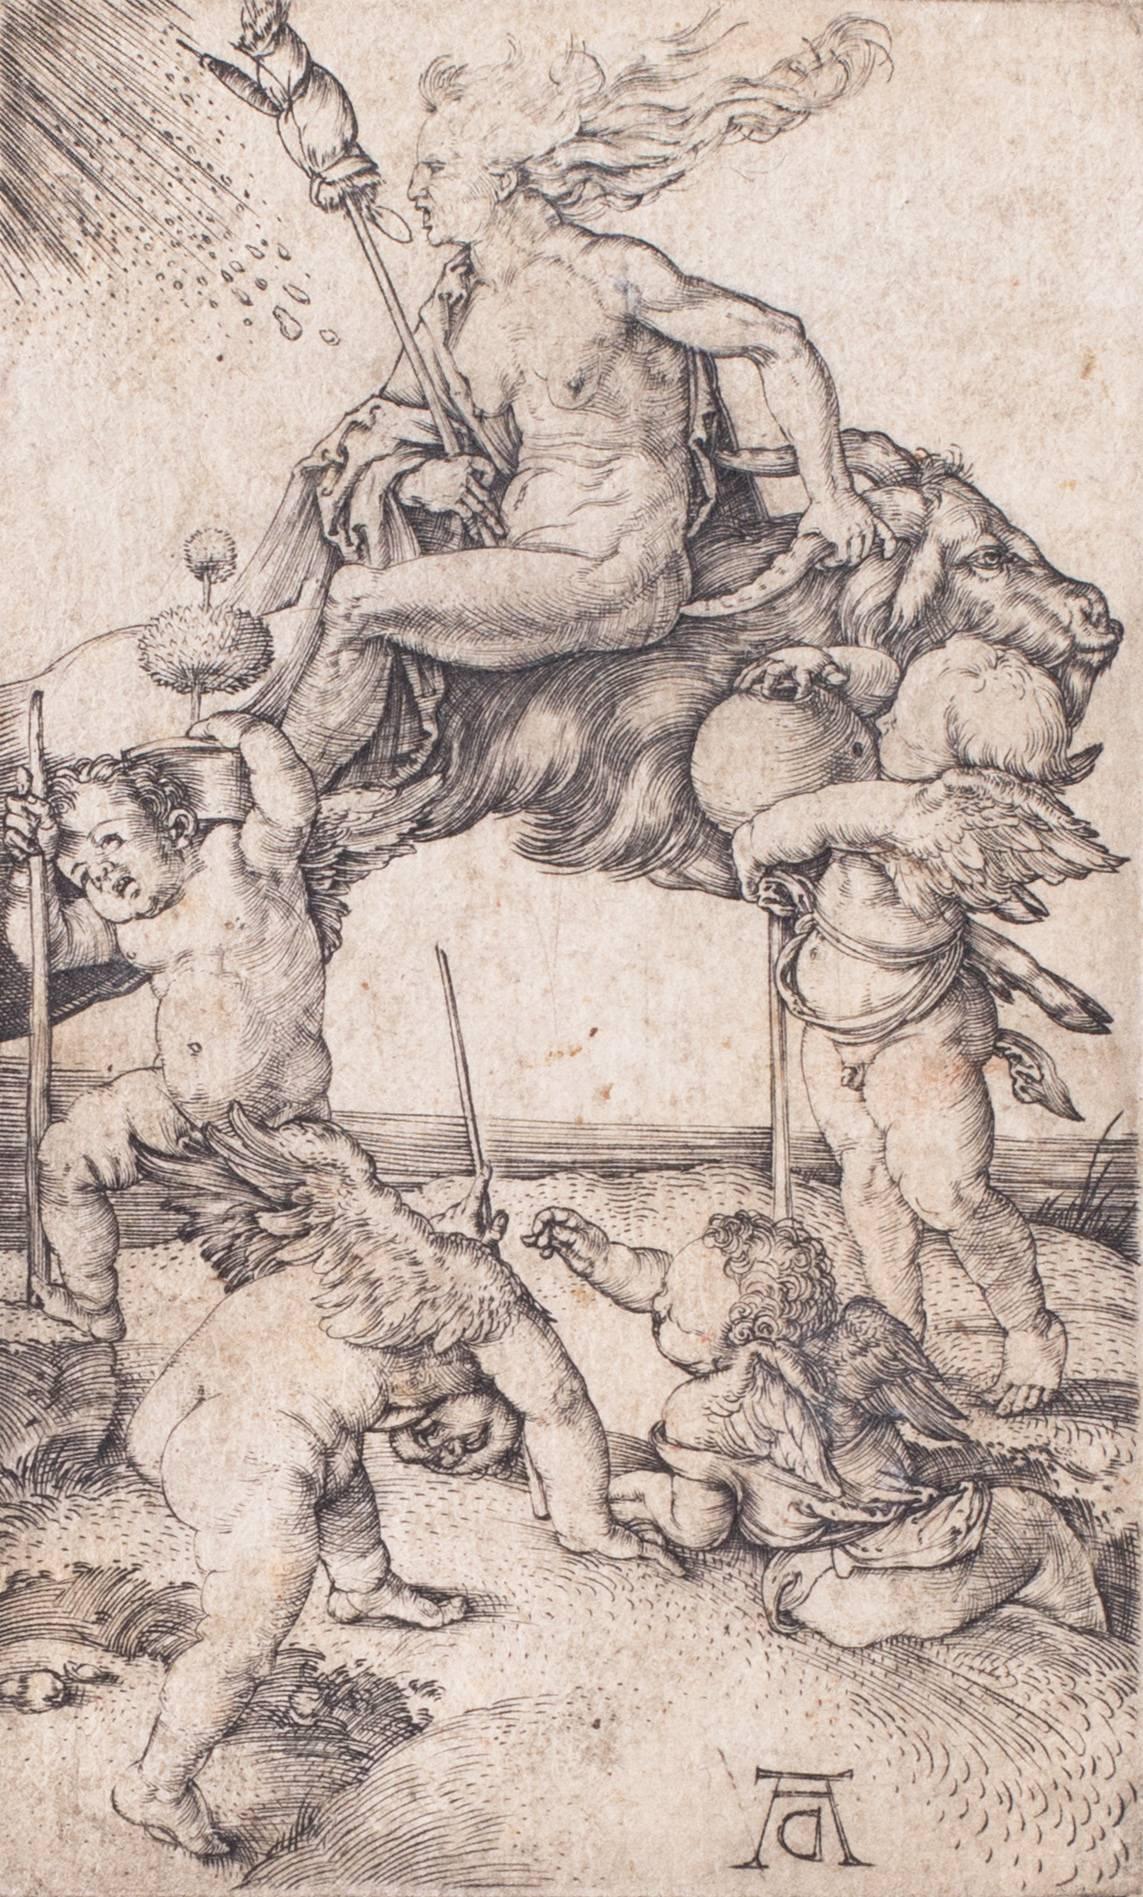 Witch riding backwards on a goat - Print by Albrecht Dürer